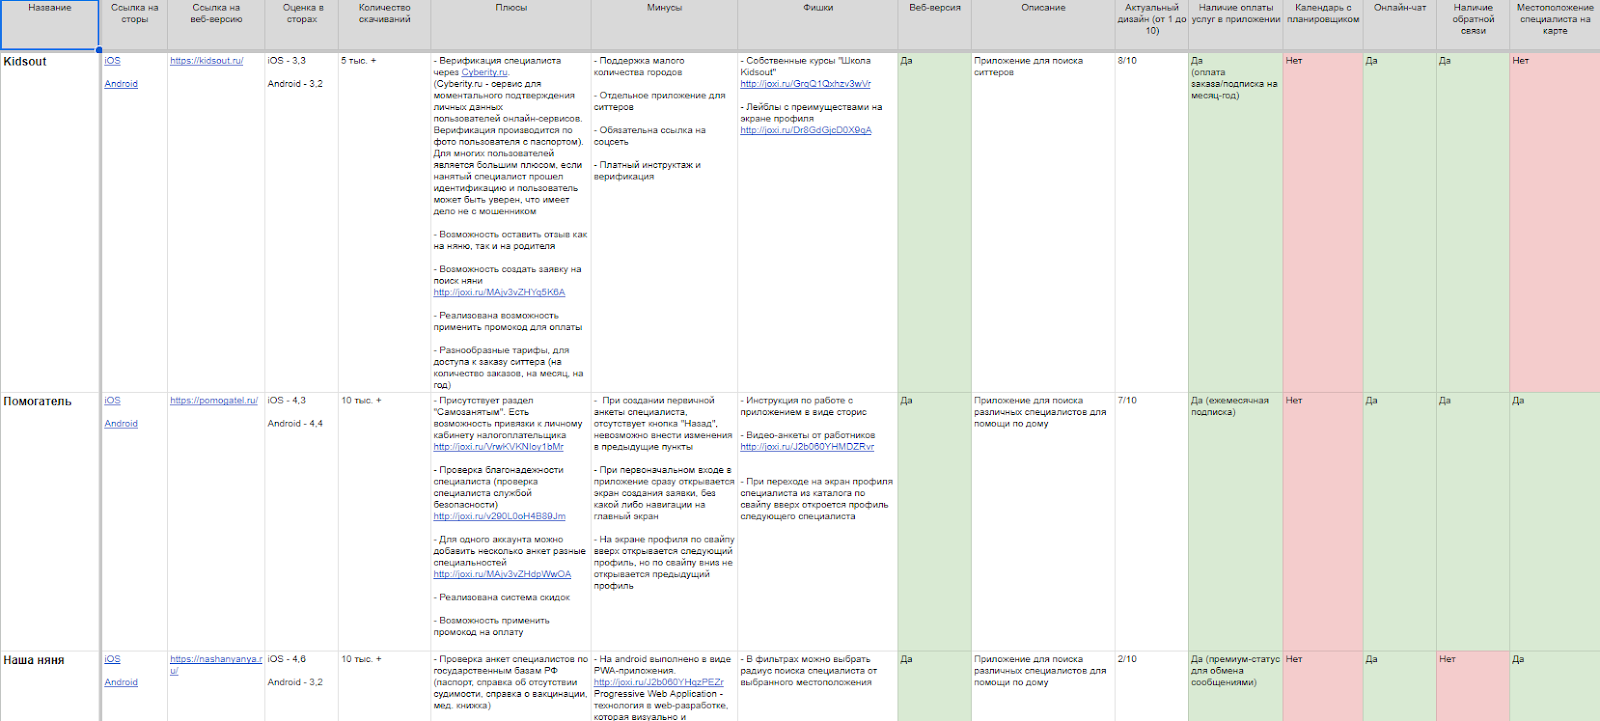 Фрагмент конкурентного анализа НяняГуру в Google Docs 